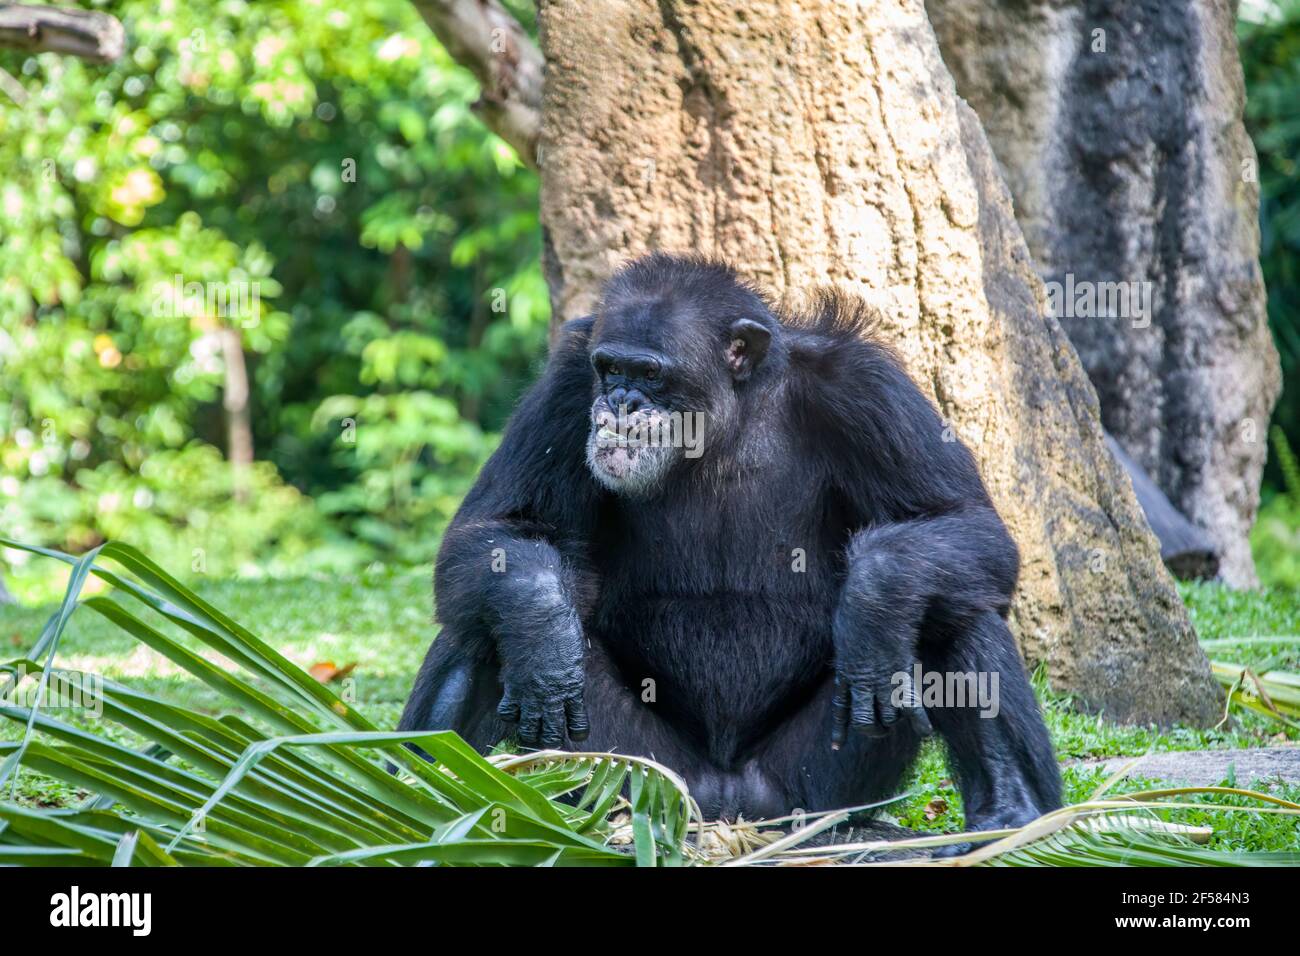 Un vecchio Chimpanzee maschio sta siting e mangiando. Lo scimpanzé è una specie di grande scimmia originaria delle foreste e delle savane dell'Africa tropicale. Foto Stock